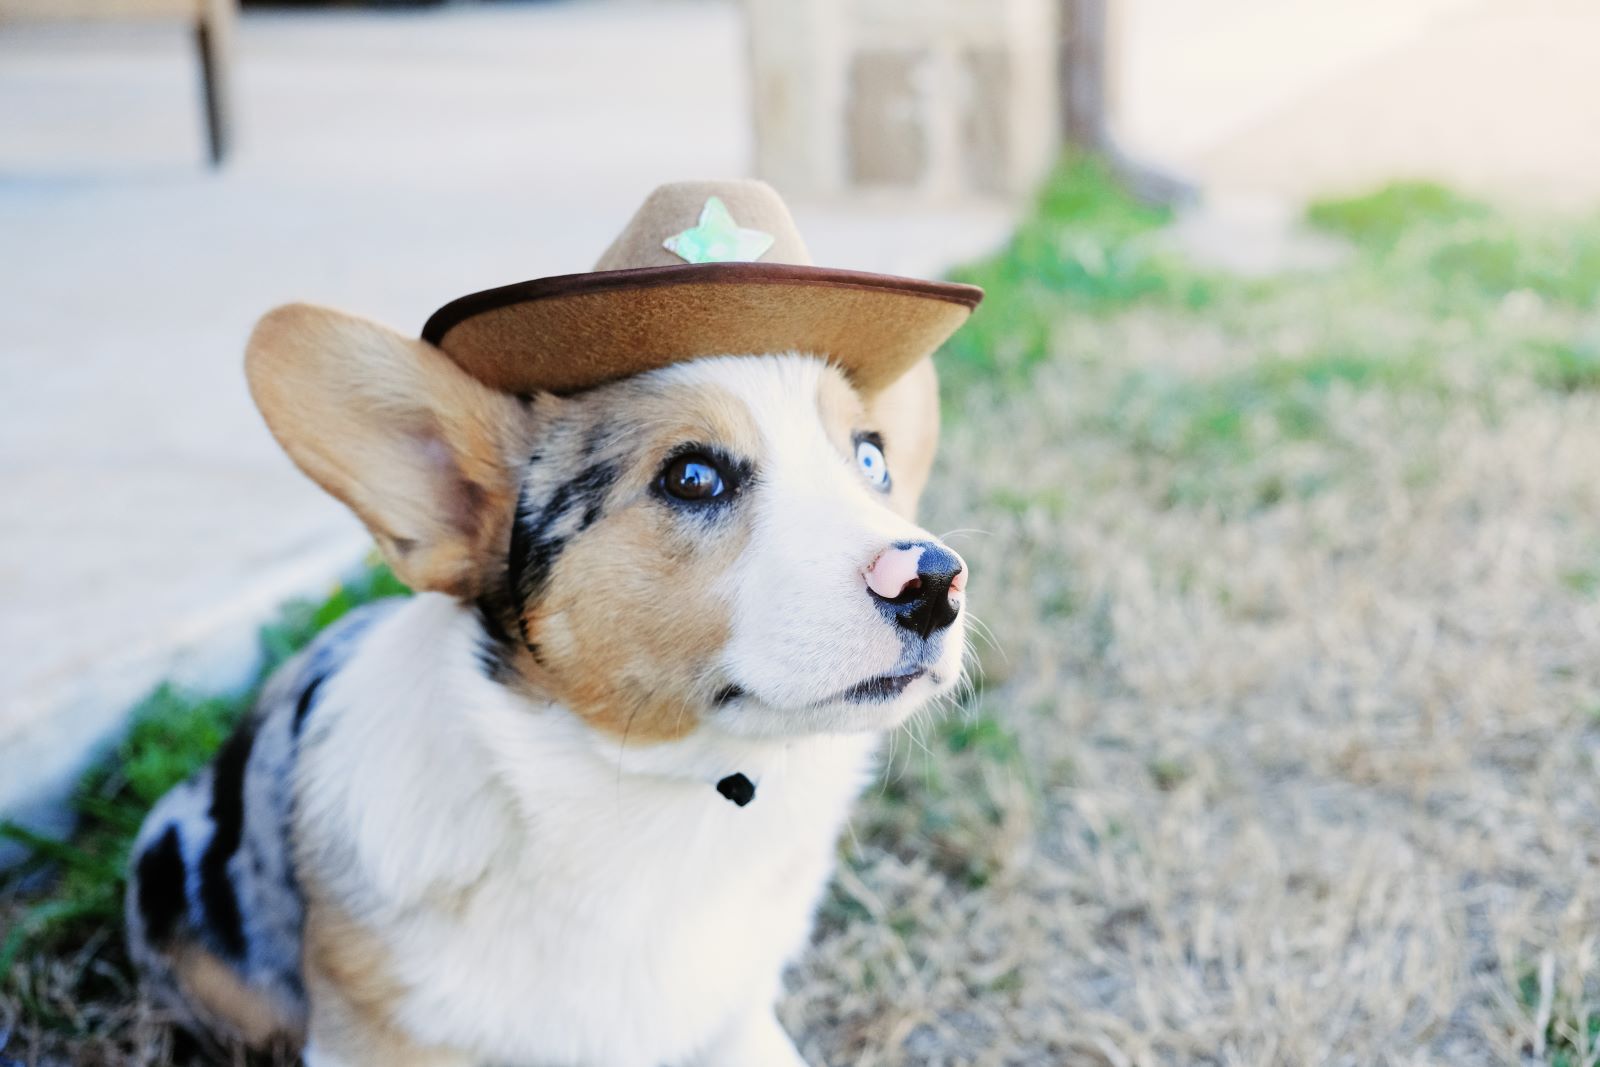 cowboy dog!